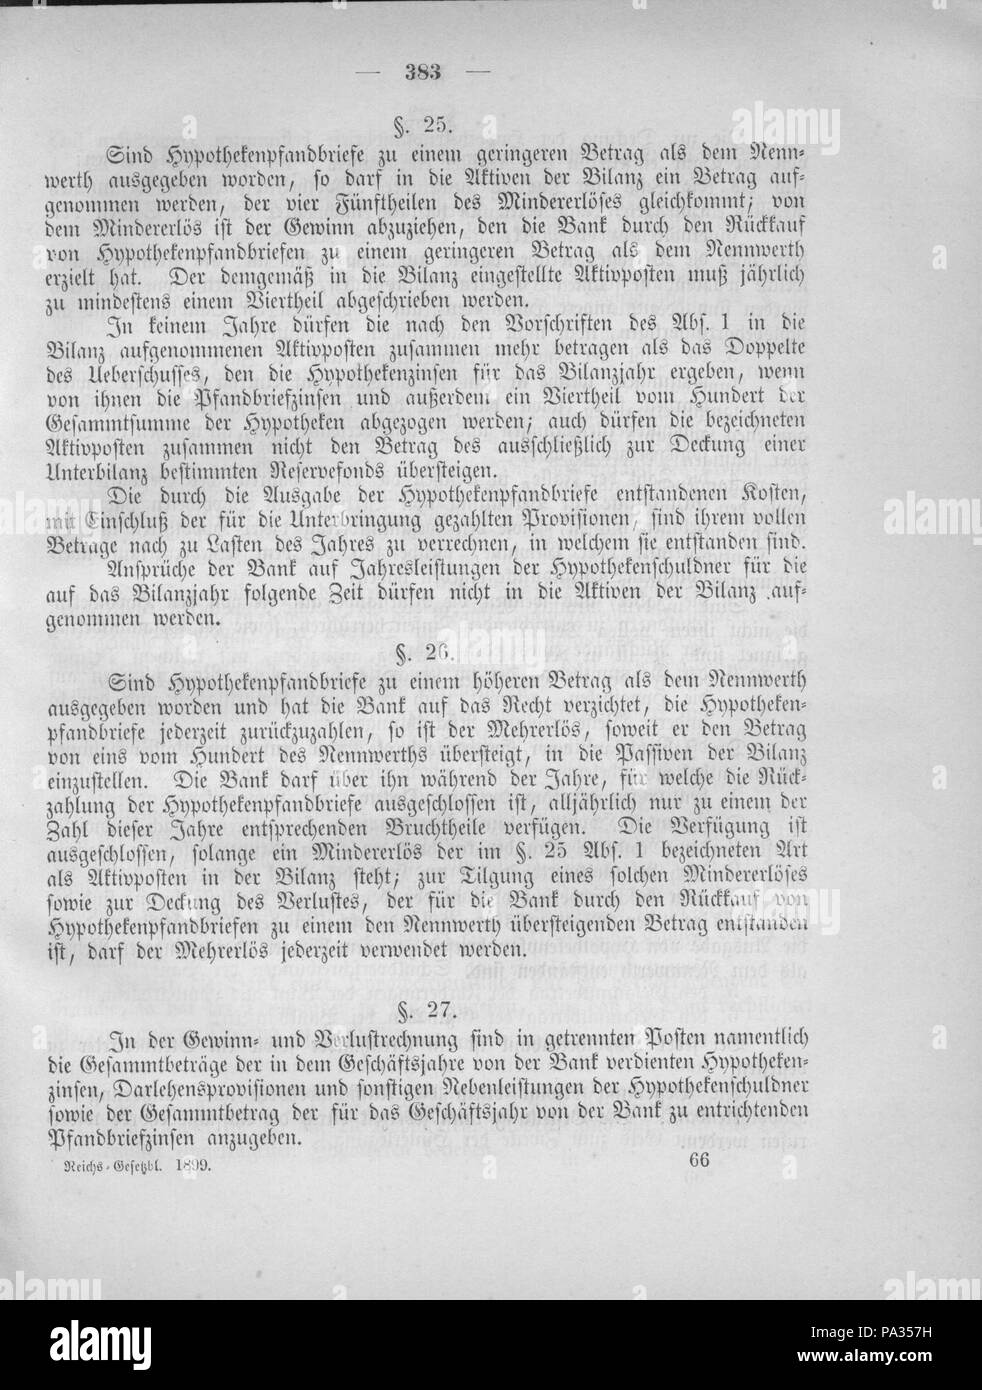 395 Deutsches Reichsgesetzblatt 1899 032 383 Stock Photo